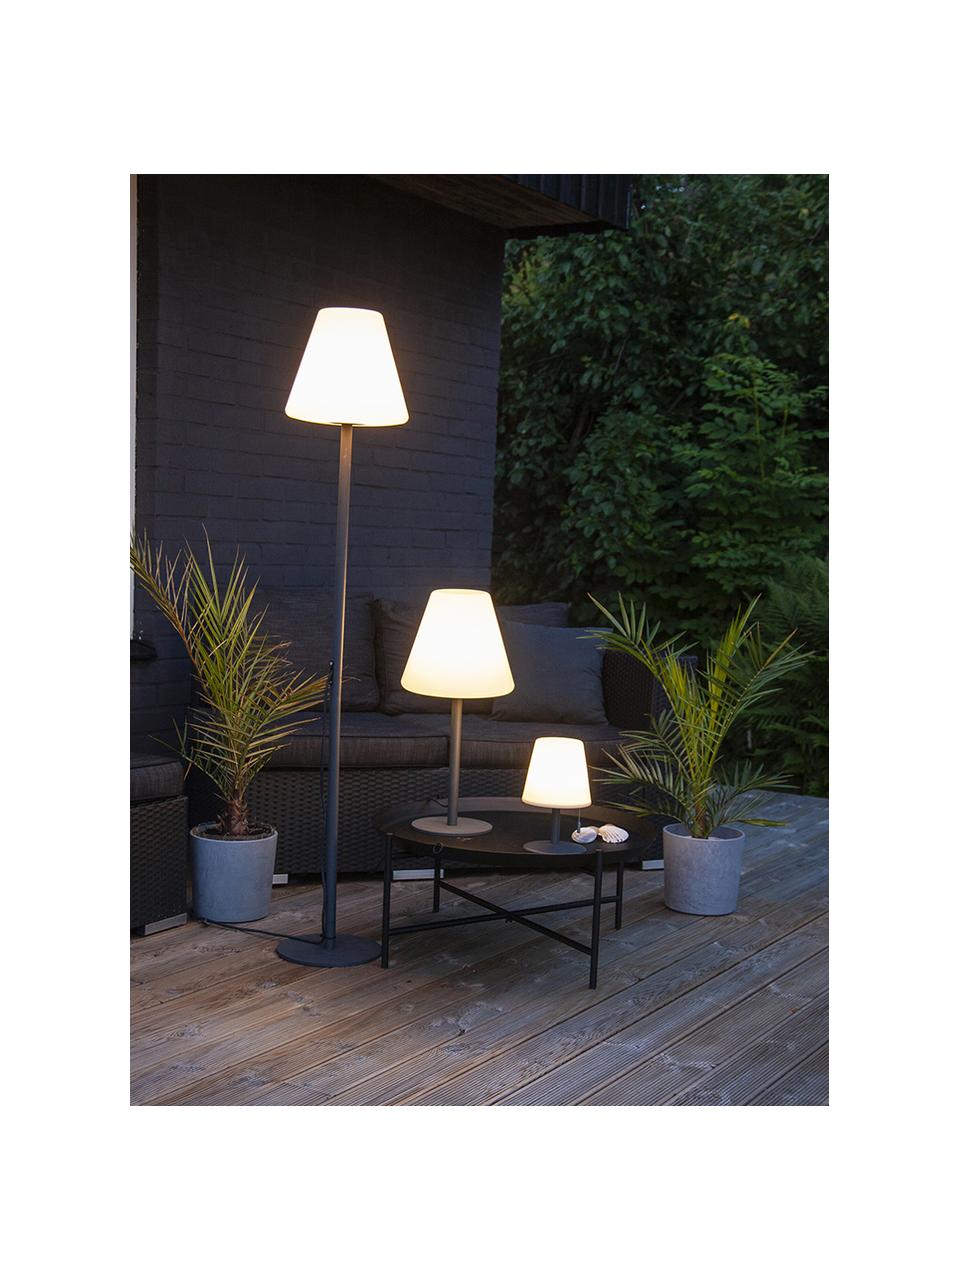 Outdoor LED-vloerlamp Gardenlight met vloerlamp, Lampenkap: kunststof, Lampvoet: gecoat metaal, Wit, antraciet, Ø 28 x H 150 cm